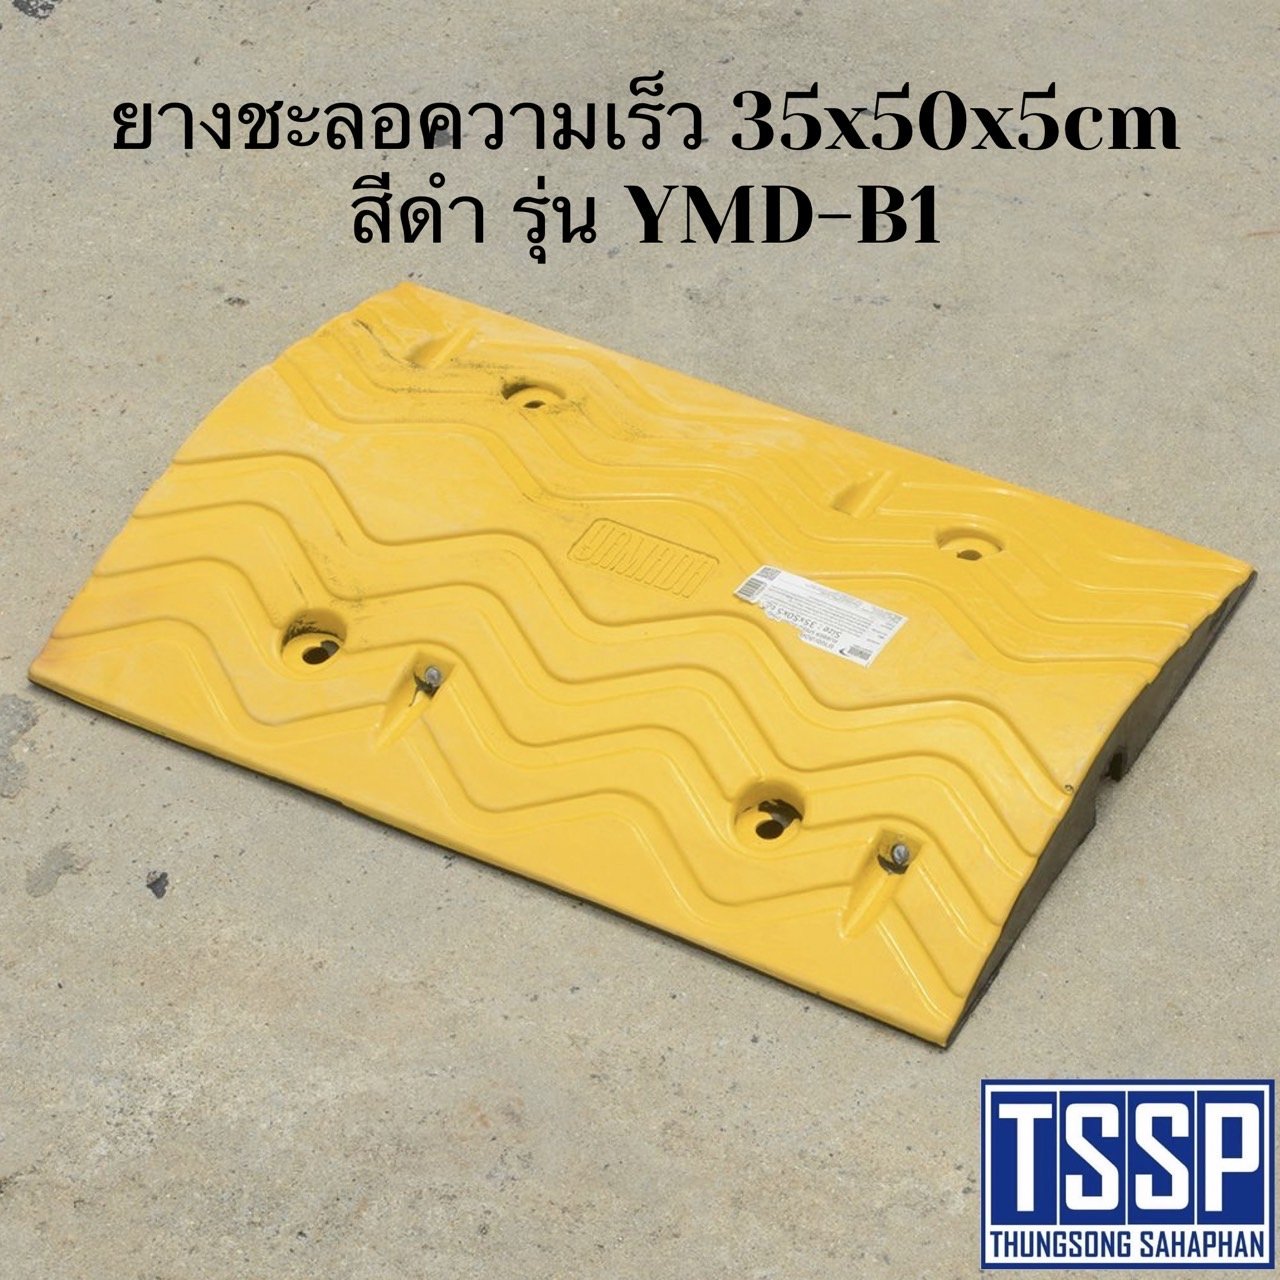 ยางชะลอความเร็ว 35x50x5cm สีเหลือง รุ่น YMD-Y1